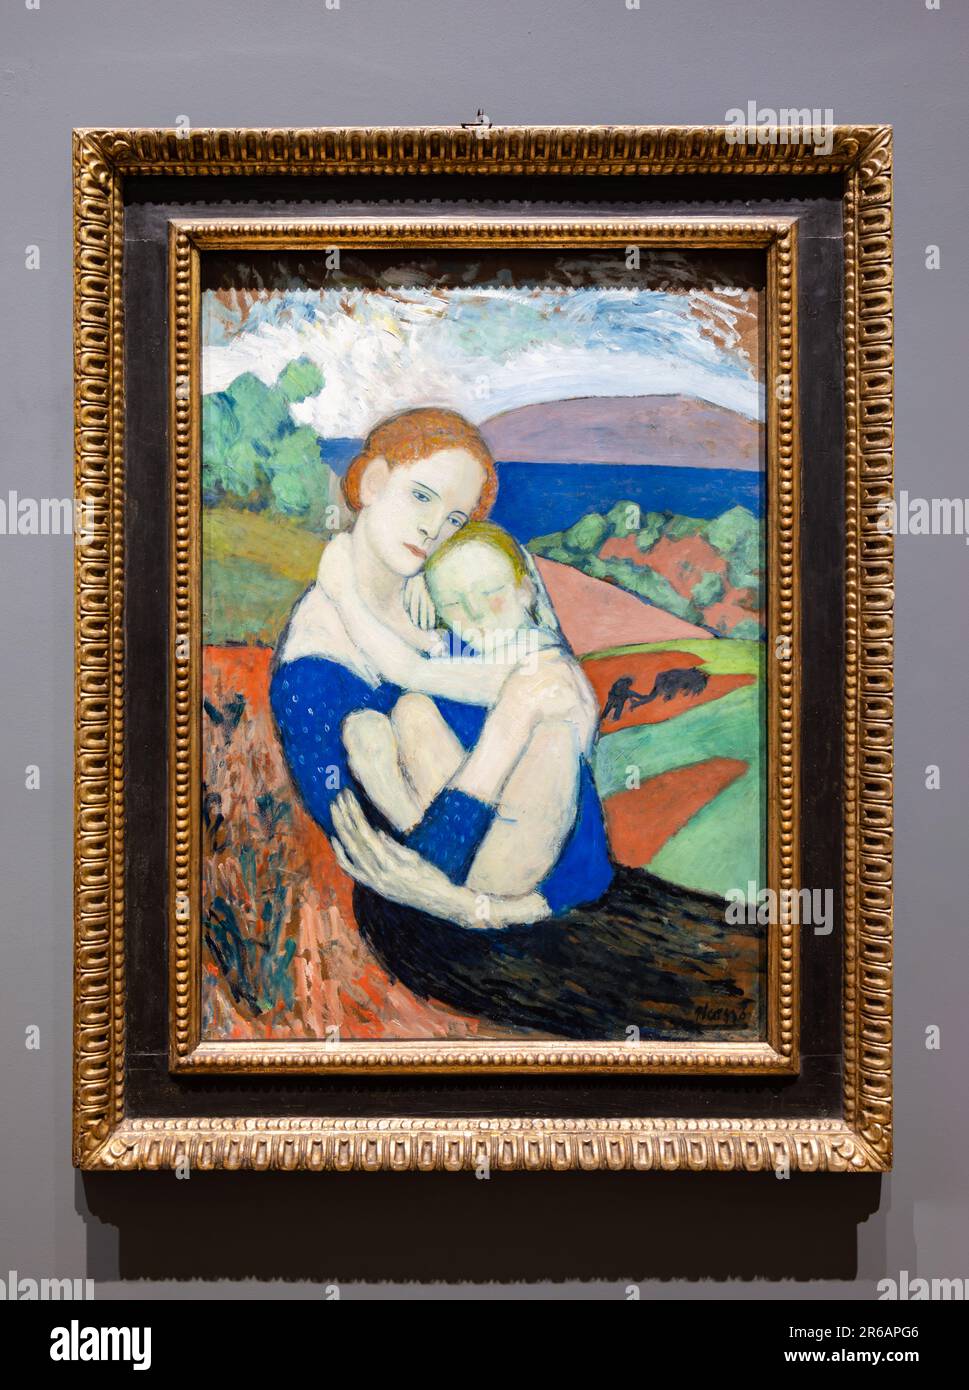 Mutterschaft (La Maternité) von Pablo Picasso. Es wurde 1901 von Pablo Picasso im Post-Impressionismus-Stil erschaffen. Ausgestellt in der Nationalgalerie von Stockfoto